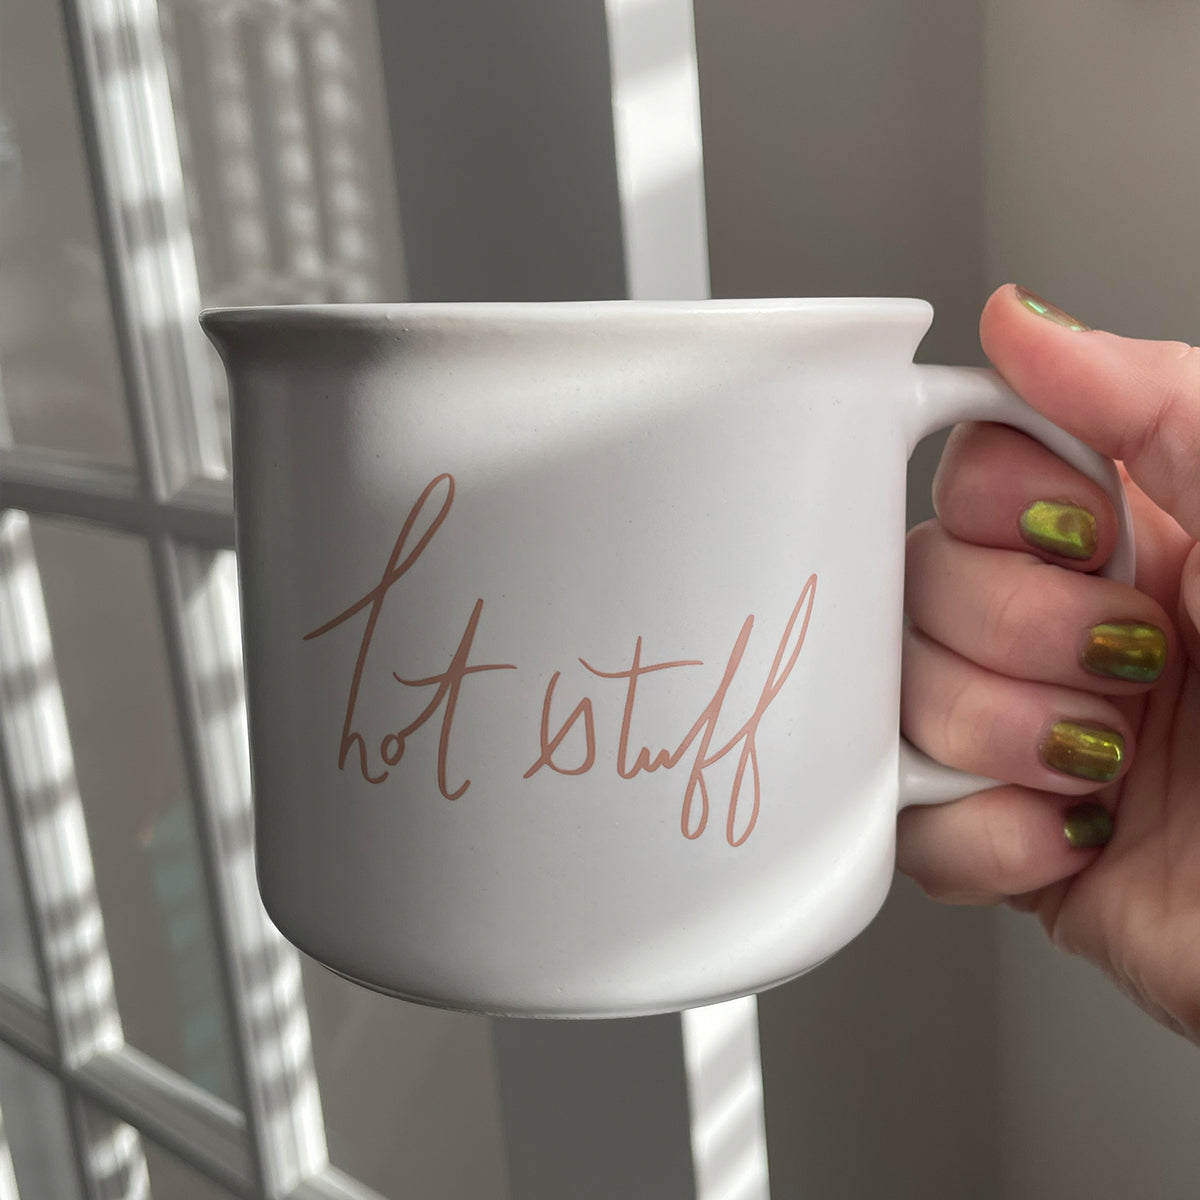 Hot Stuff Ceramic Mug | Lifestyle Image 3 | Uncommon Lifestyle